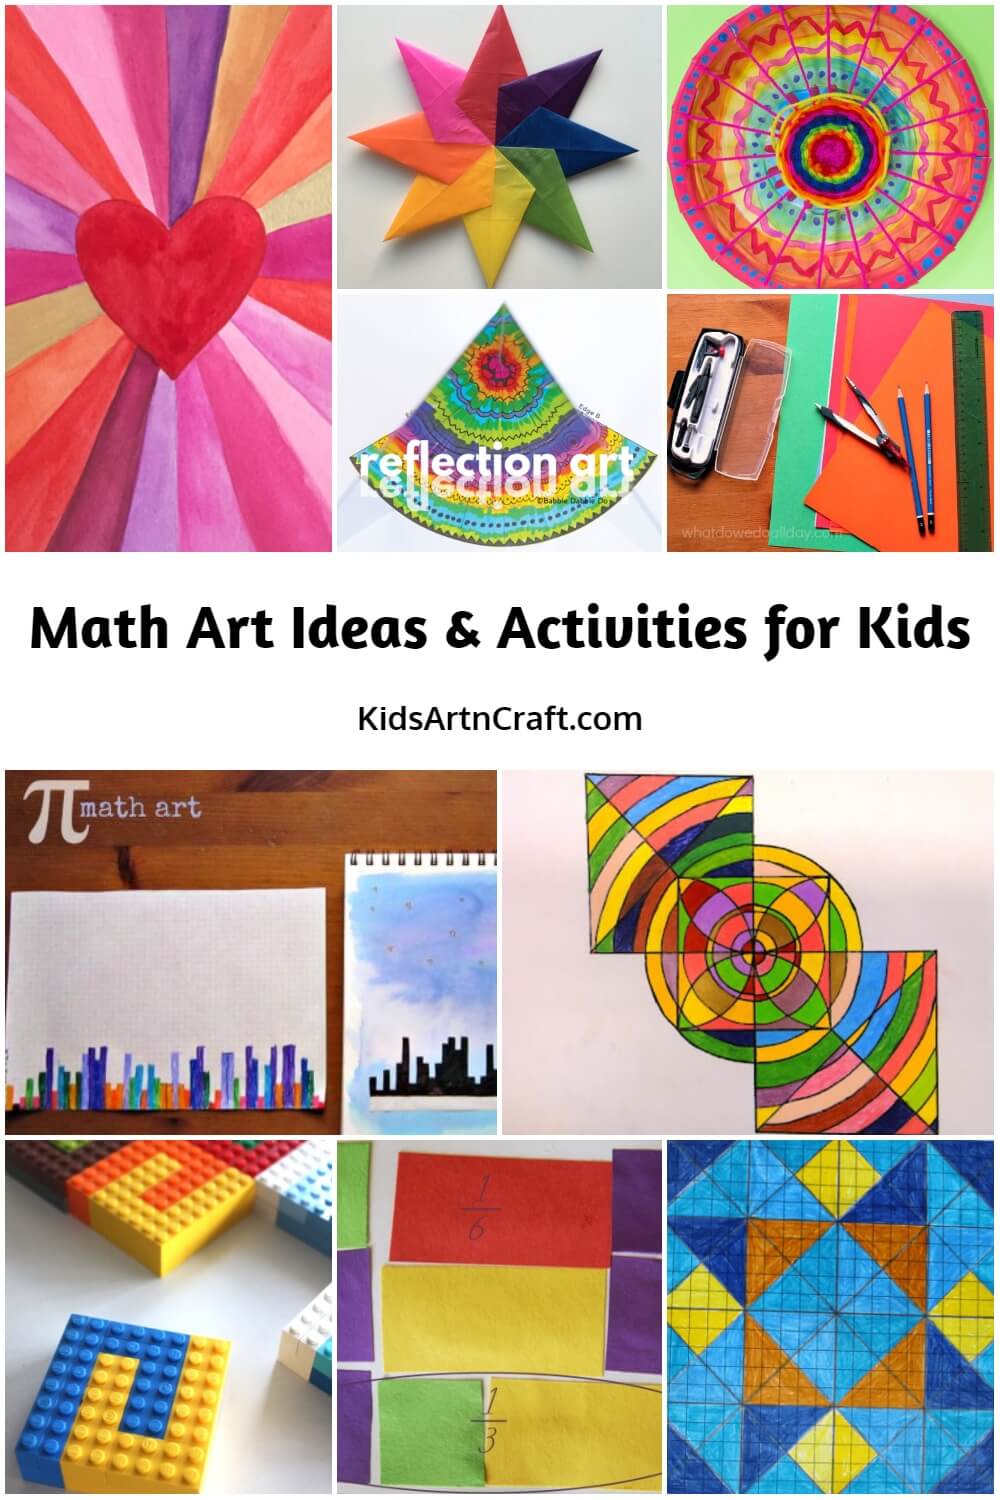 Math Art Ideas & Activities for Kids